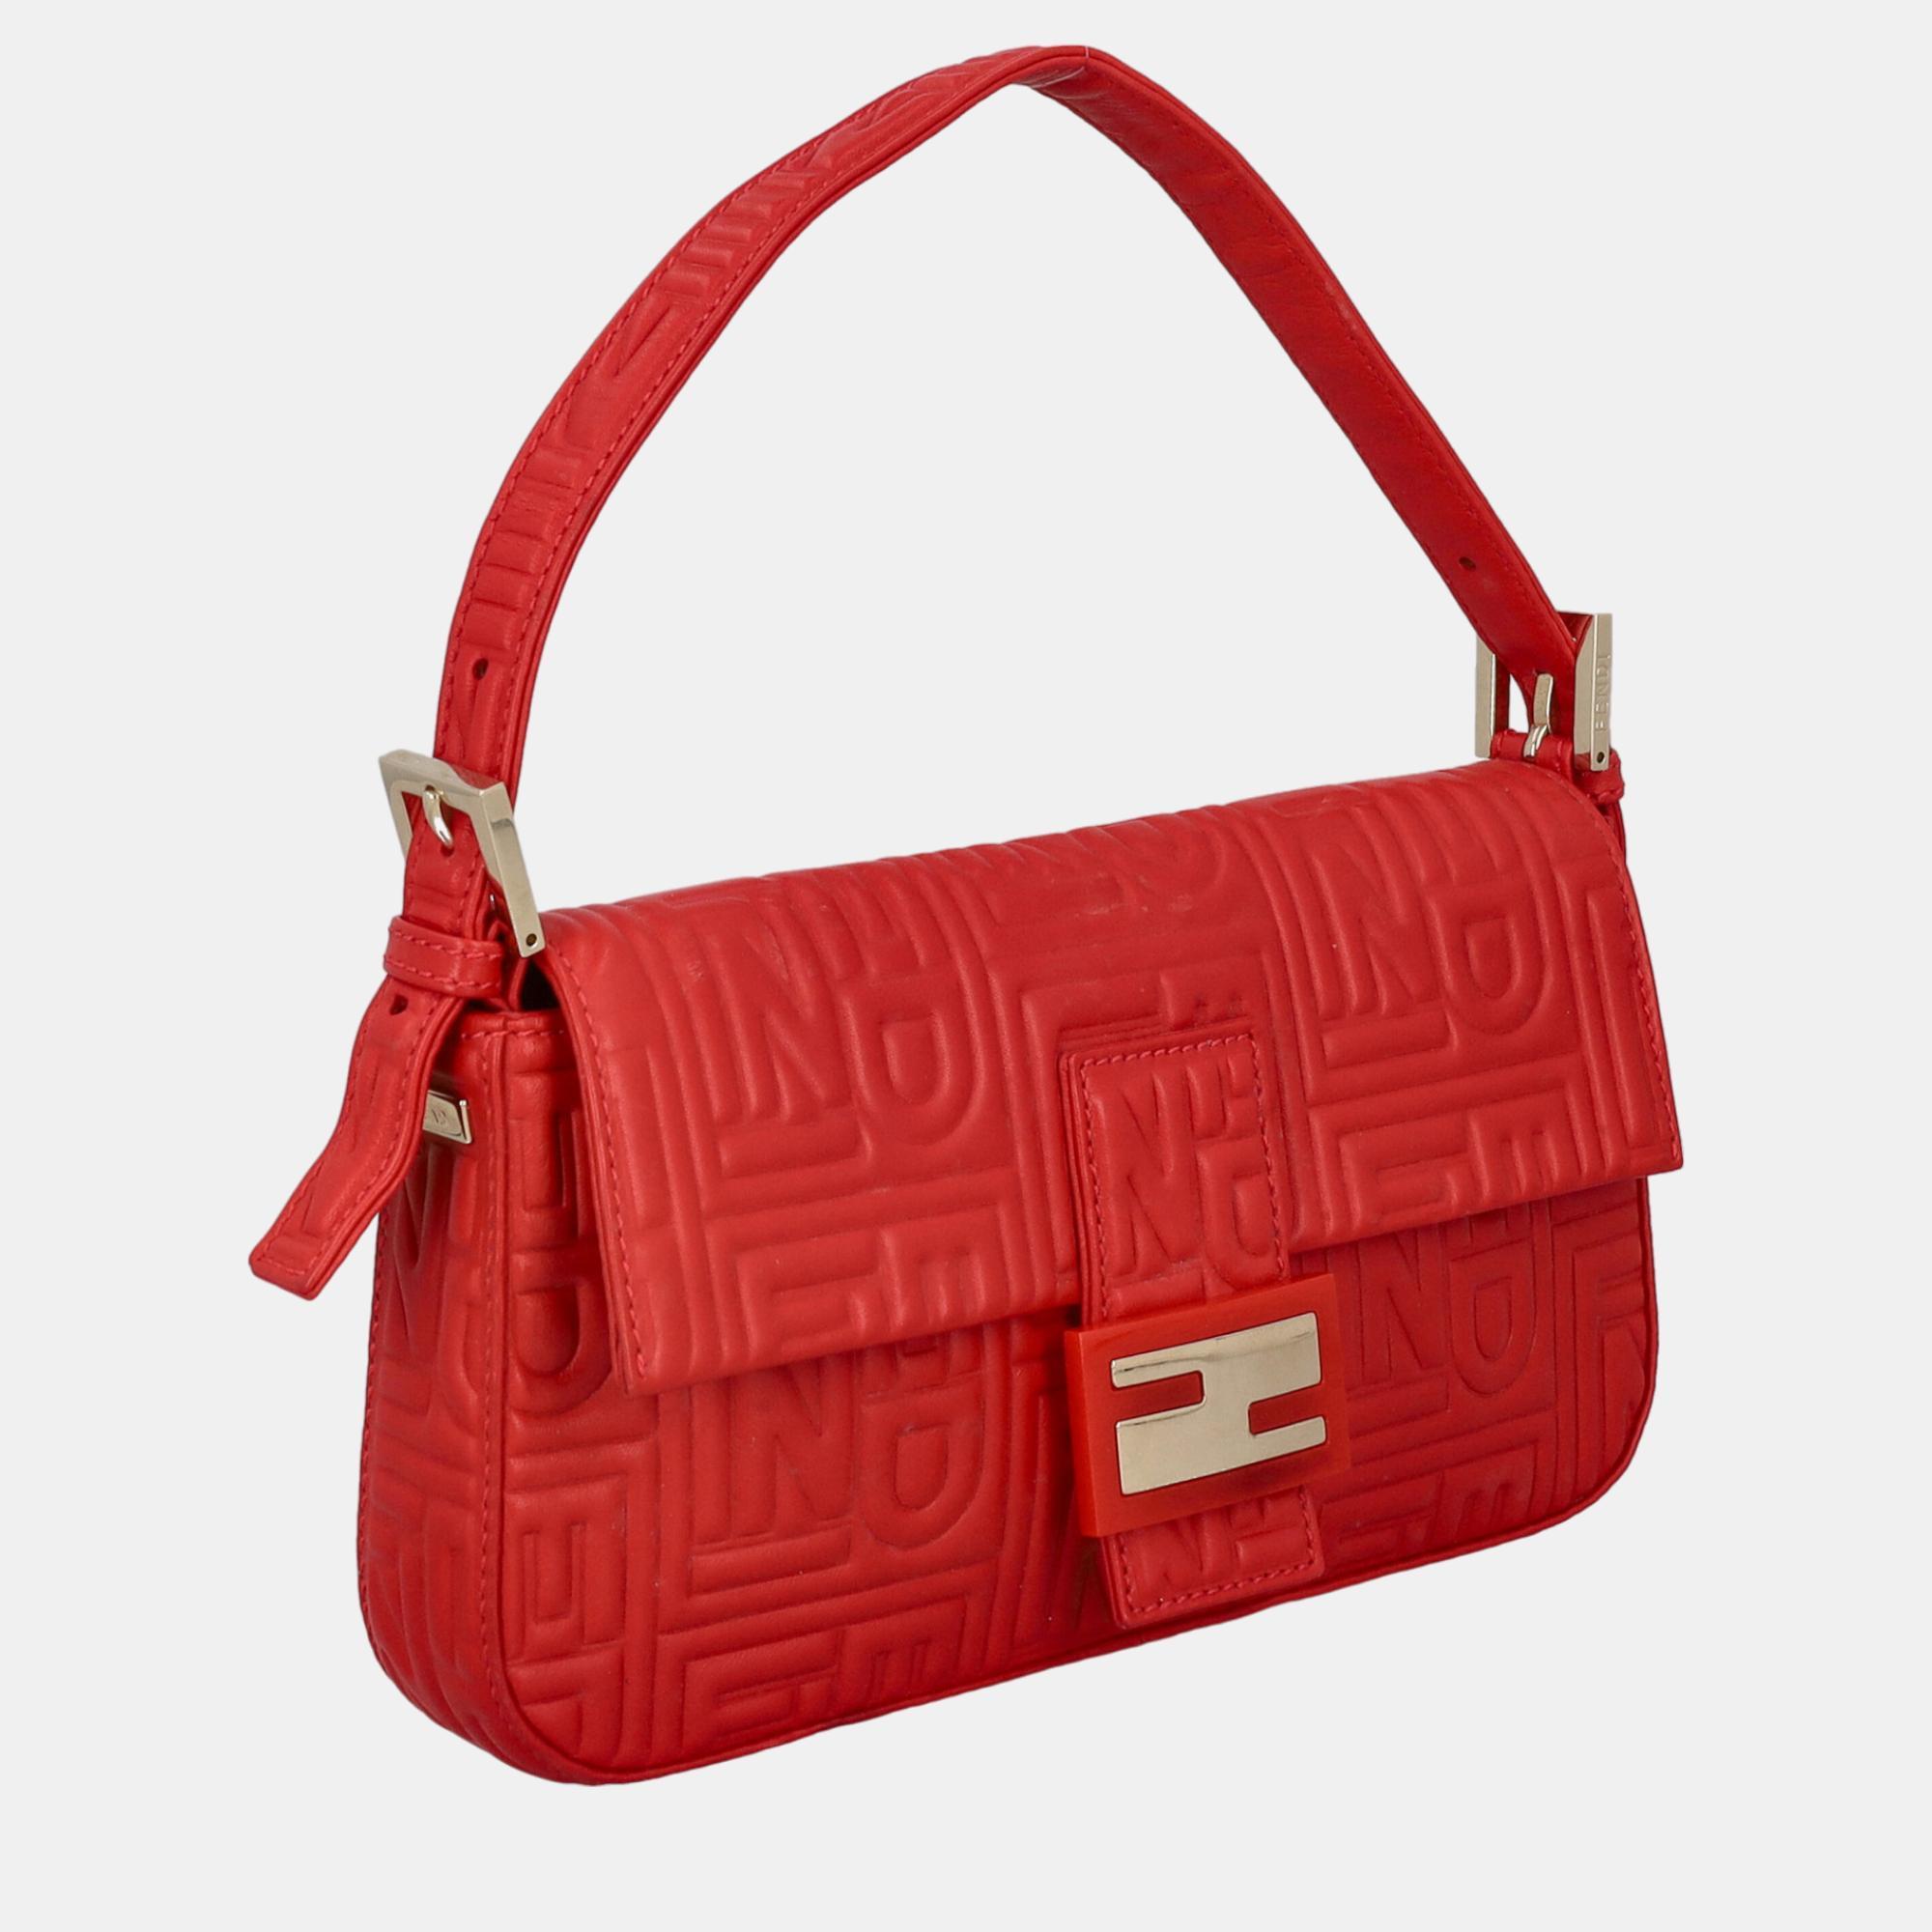 

Fendi Baguette - Women's Leather Hobo Bag - Red